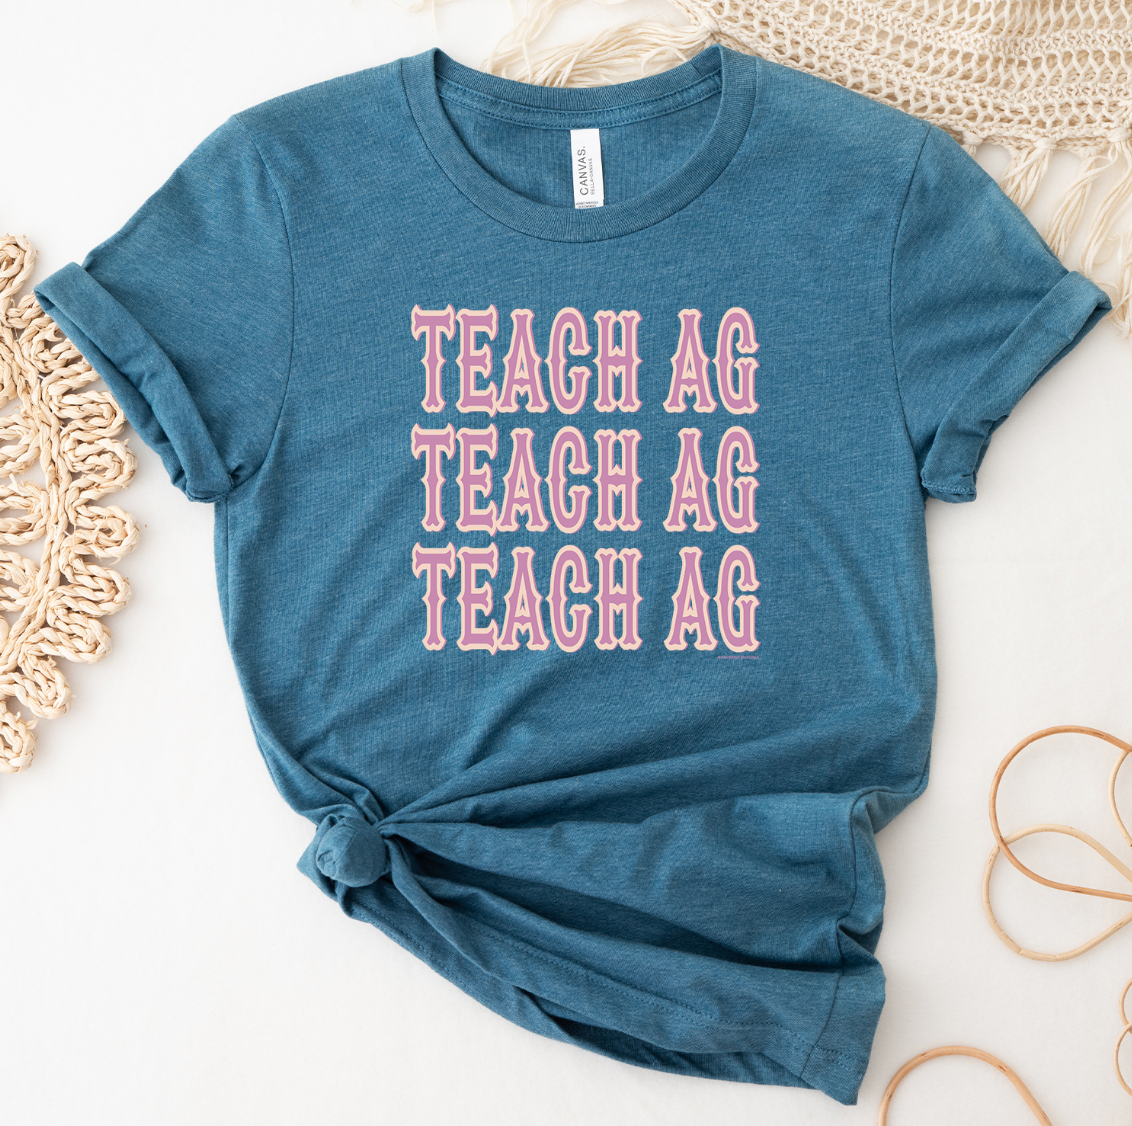 Western Teach AG T-Shirt (XS-4XL) - Multiple Colors!